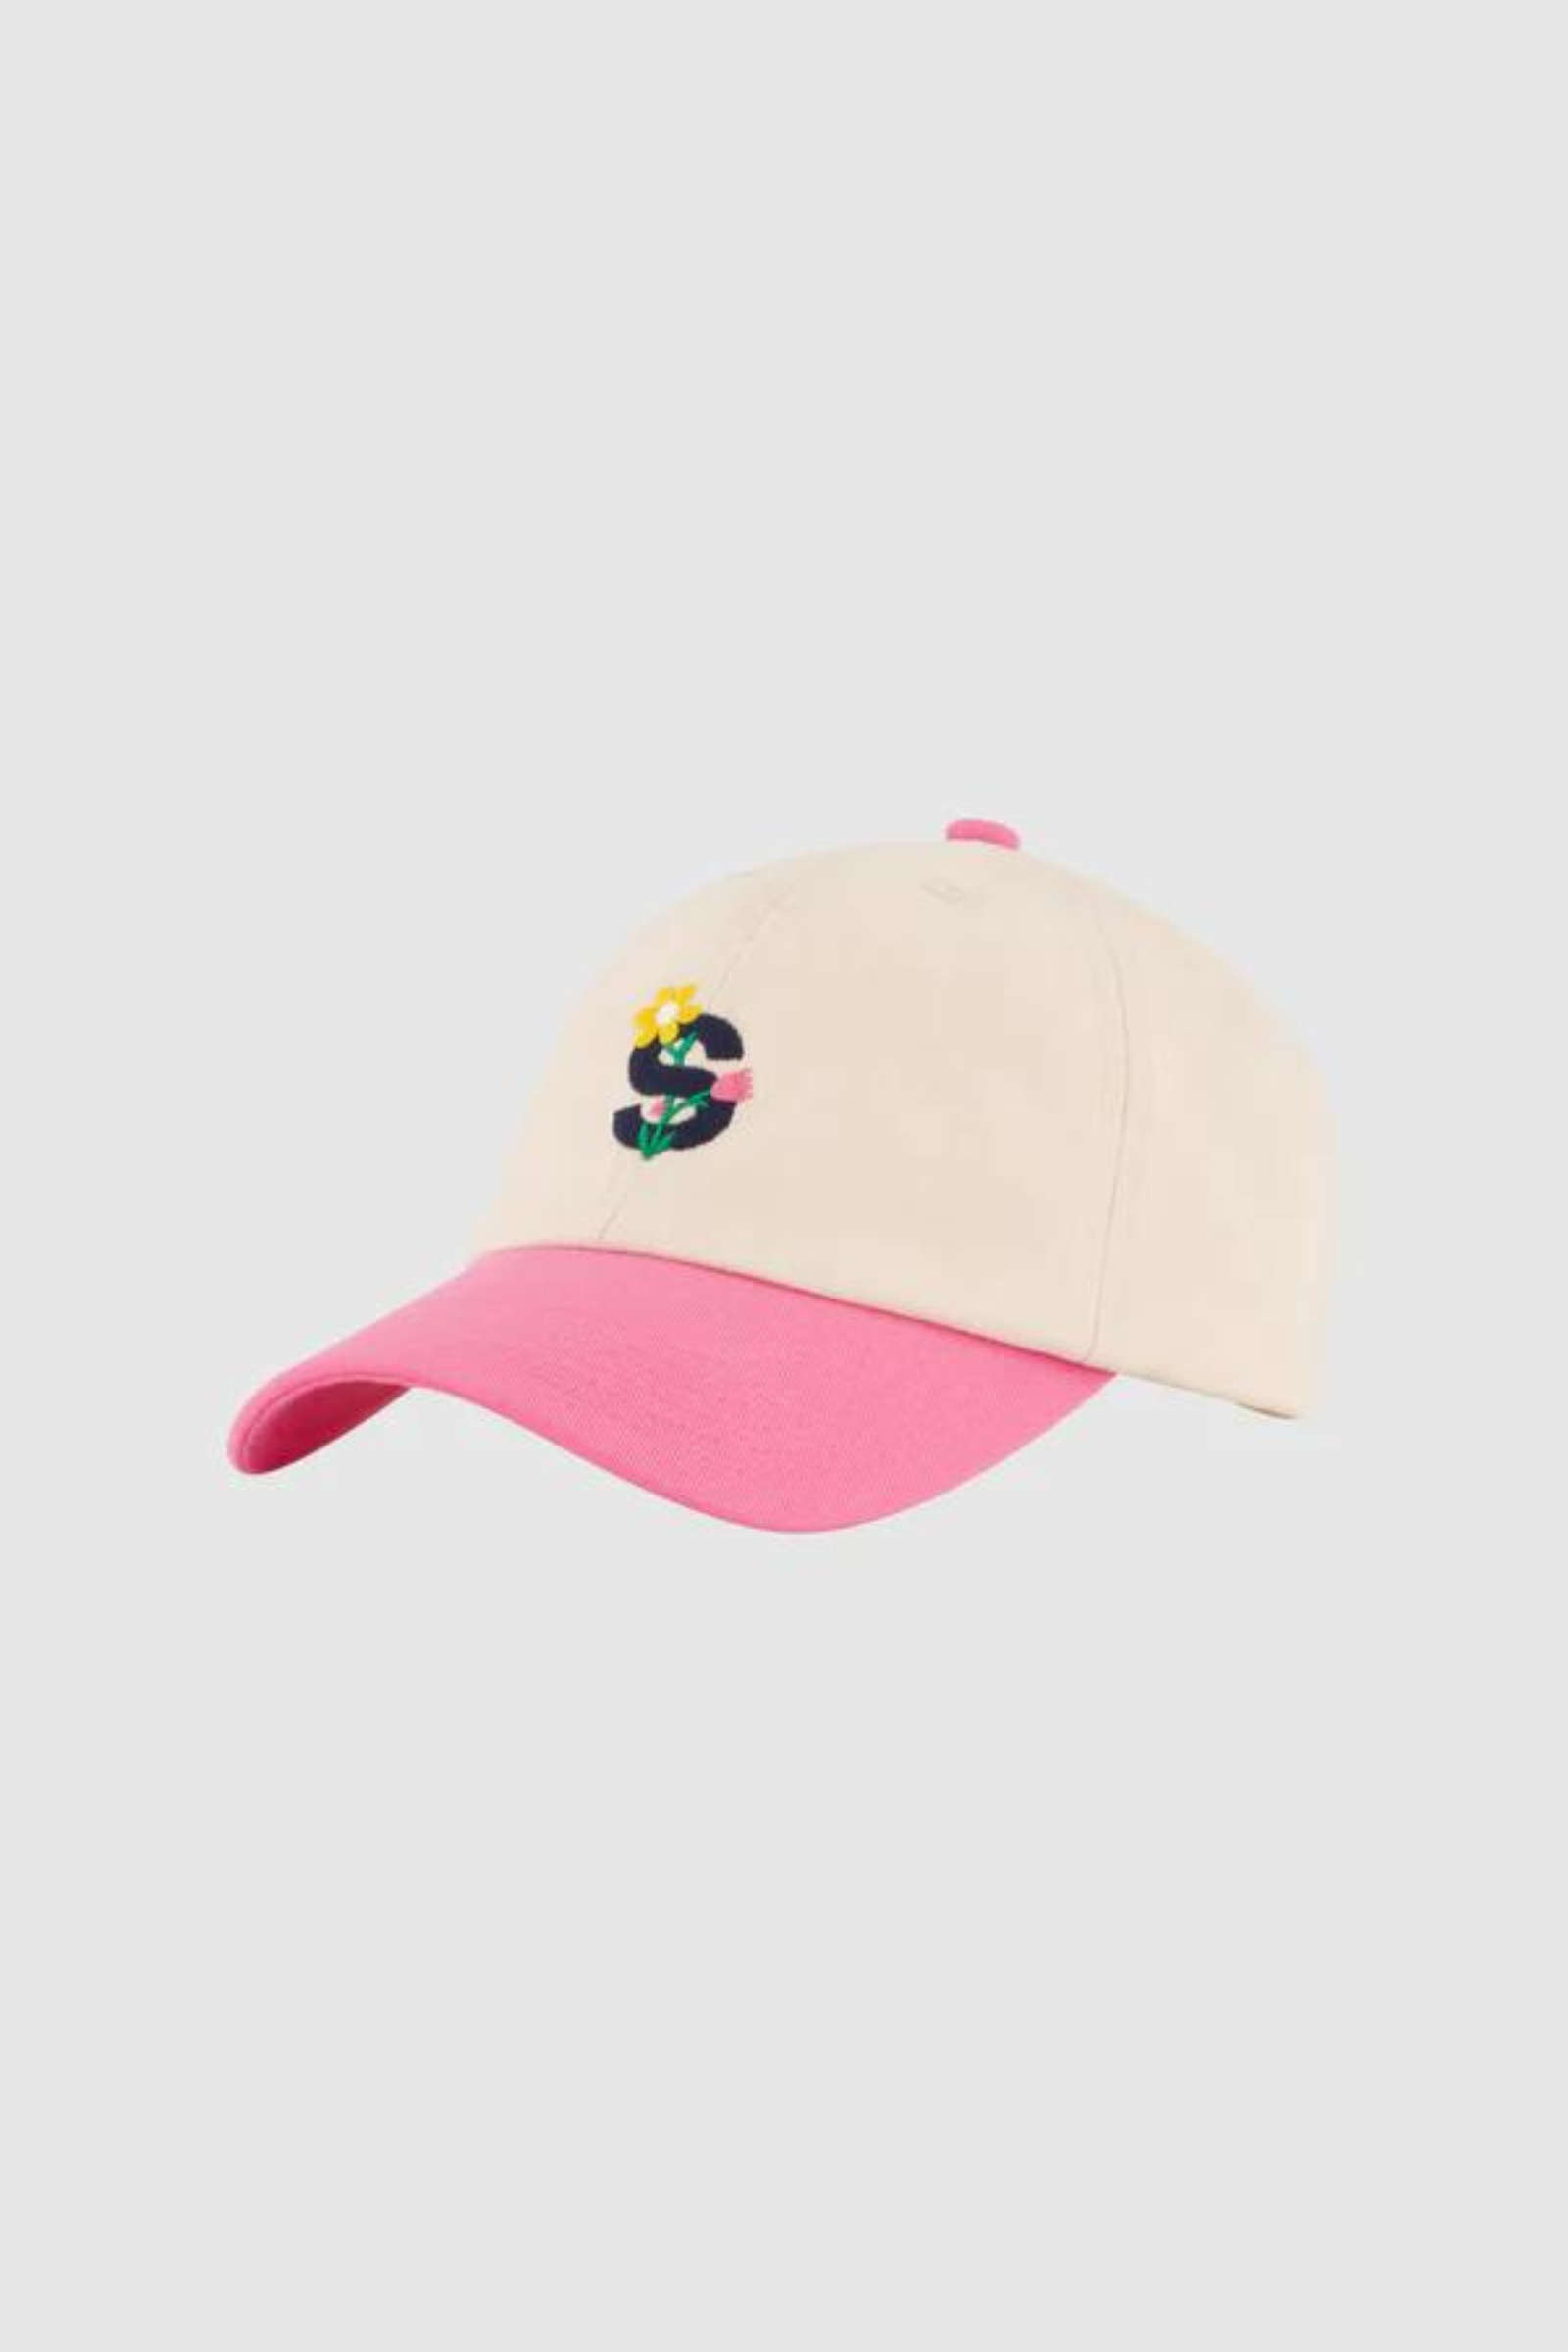 FLOWER CLASSIC CAP - ROSE, CREAM